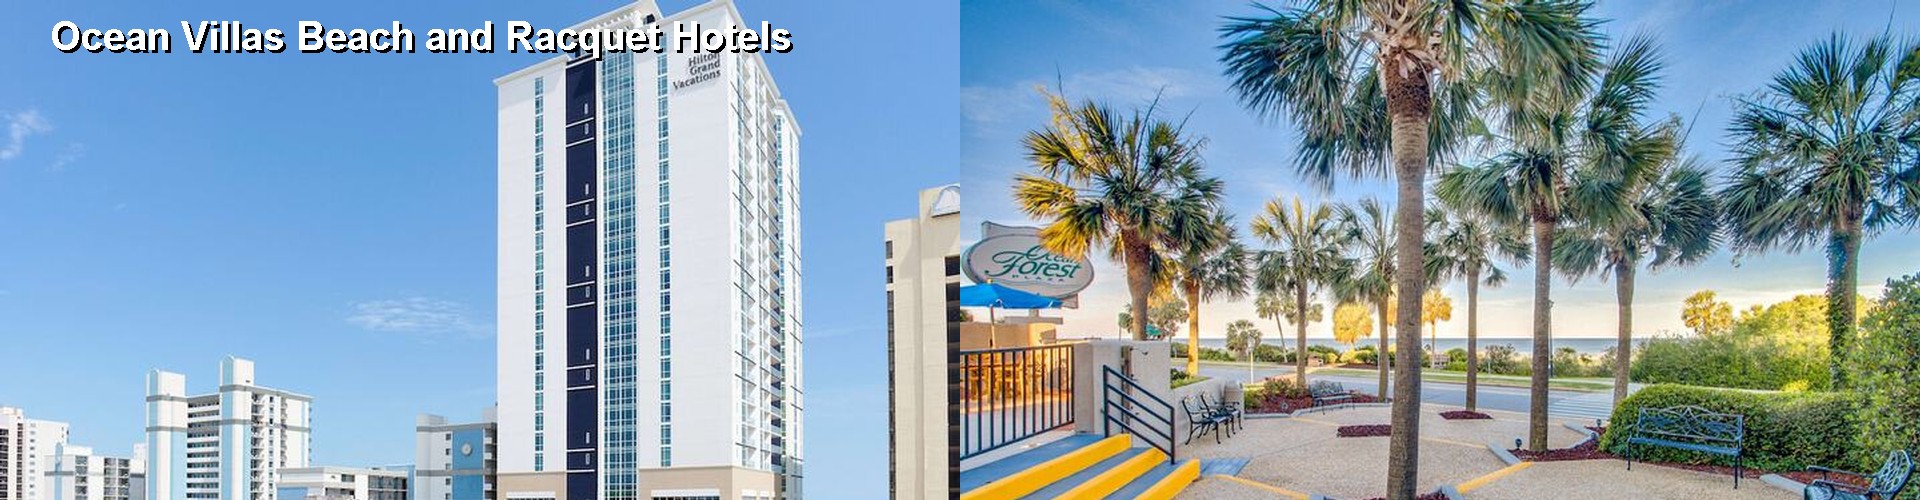 5 Best Hotels near Ocean Villas Beach and Racquet